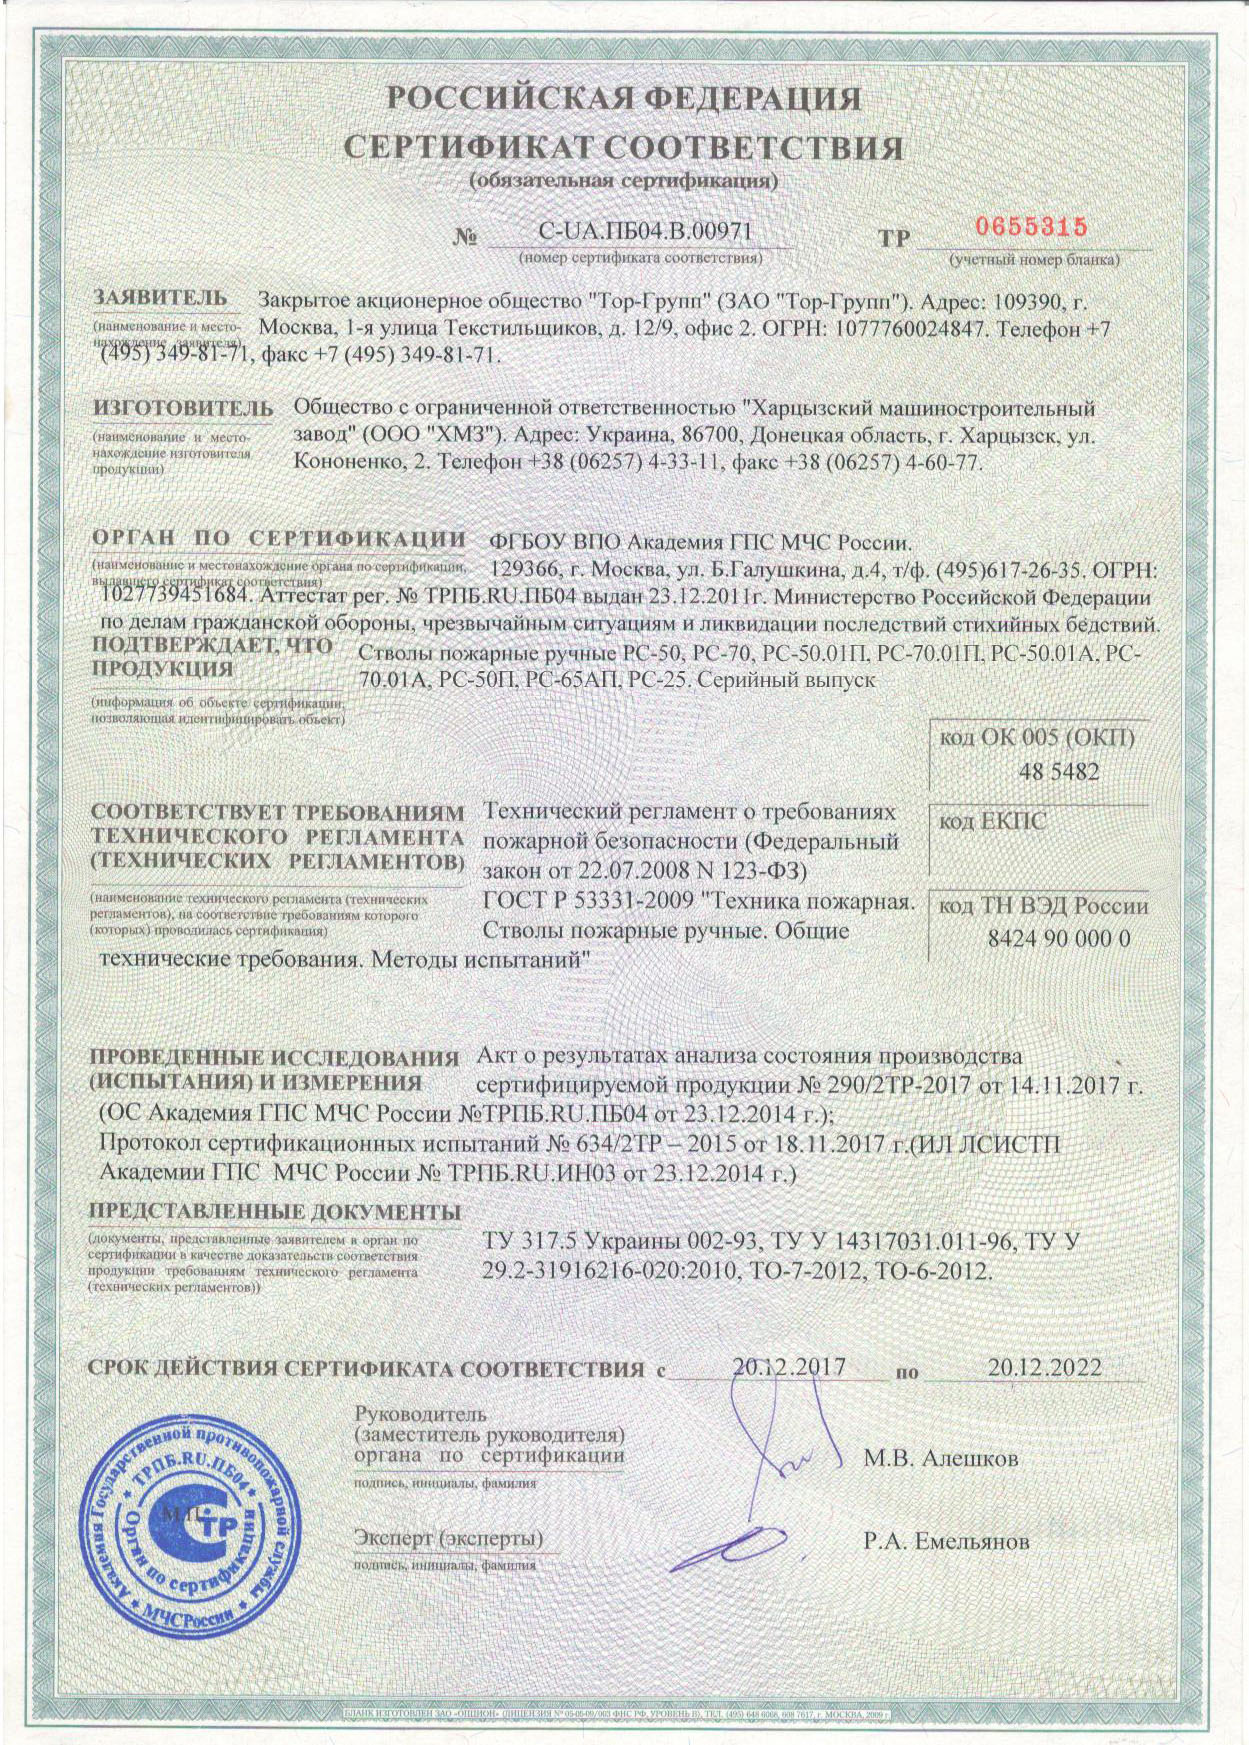 Скачать сертификат на ручной пожарный ствол РС-50П, Харцызский машиностроительный завод, Украина